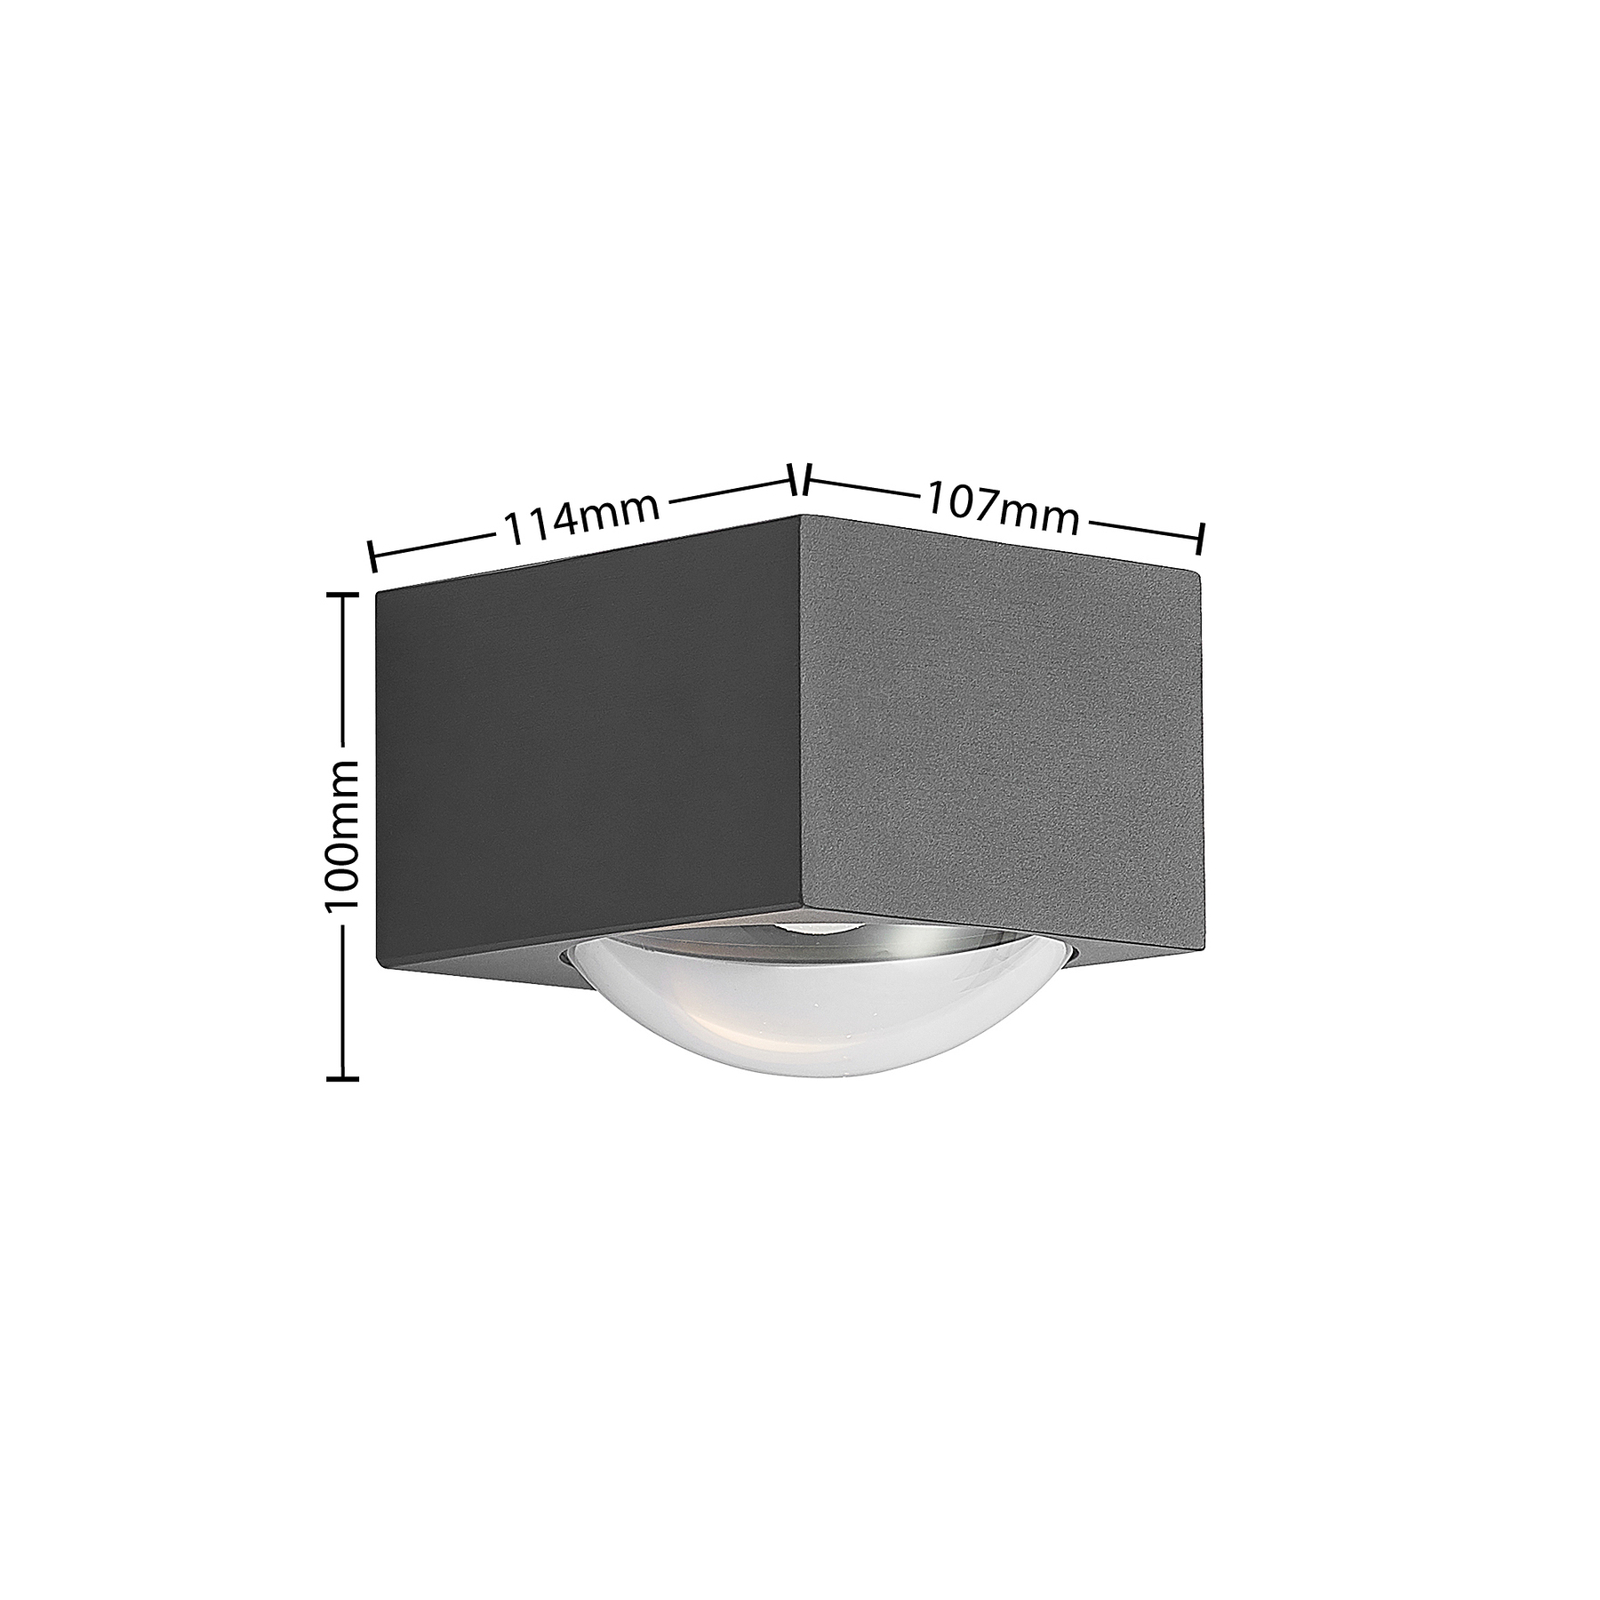 Lucande Almos LED kültéri fali szögl. 1 izzós